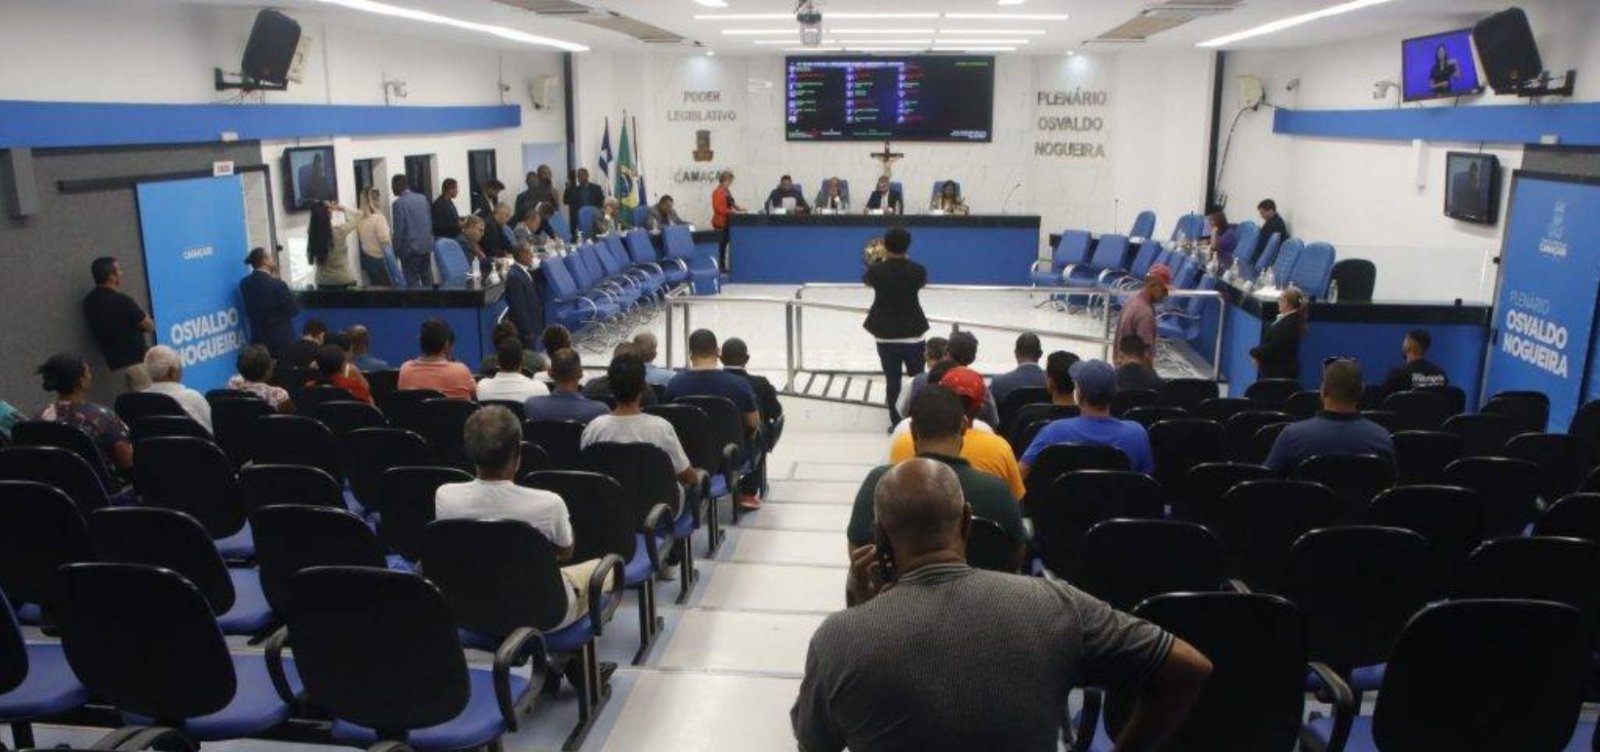 Câmara de Vereadores aprova aumento de duas cadeiras para Legislativo a partir das eleições deste ano